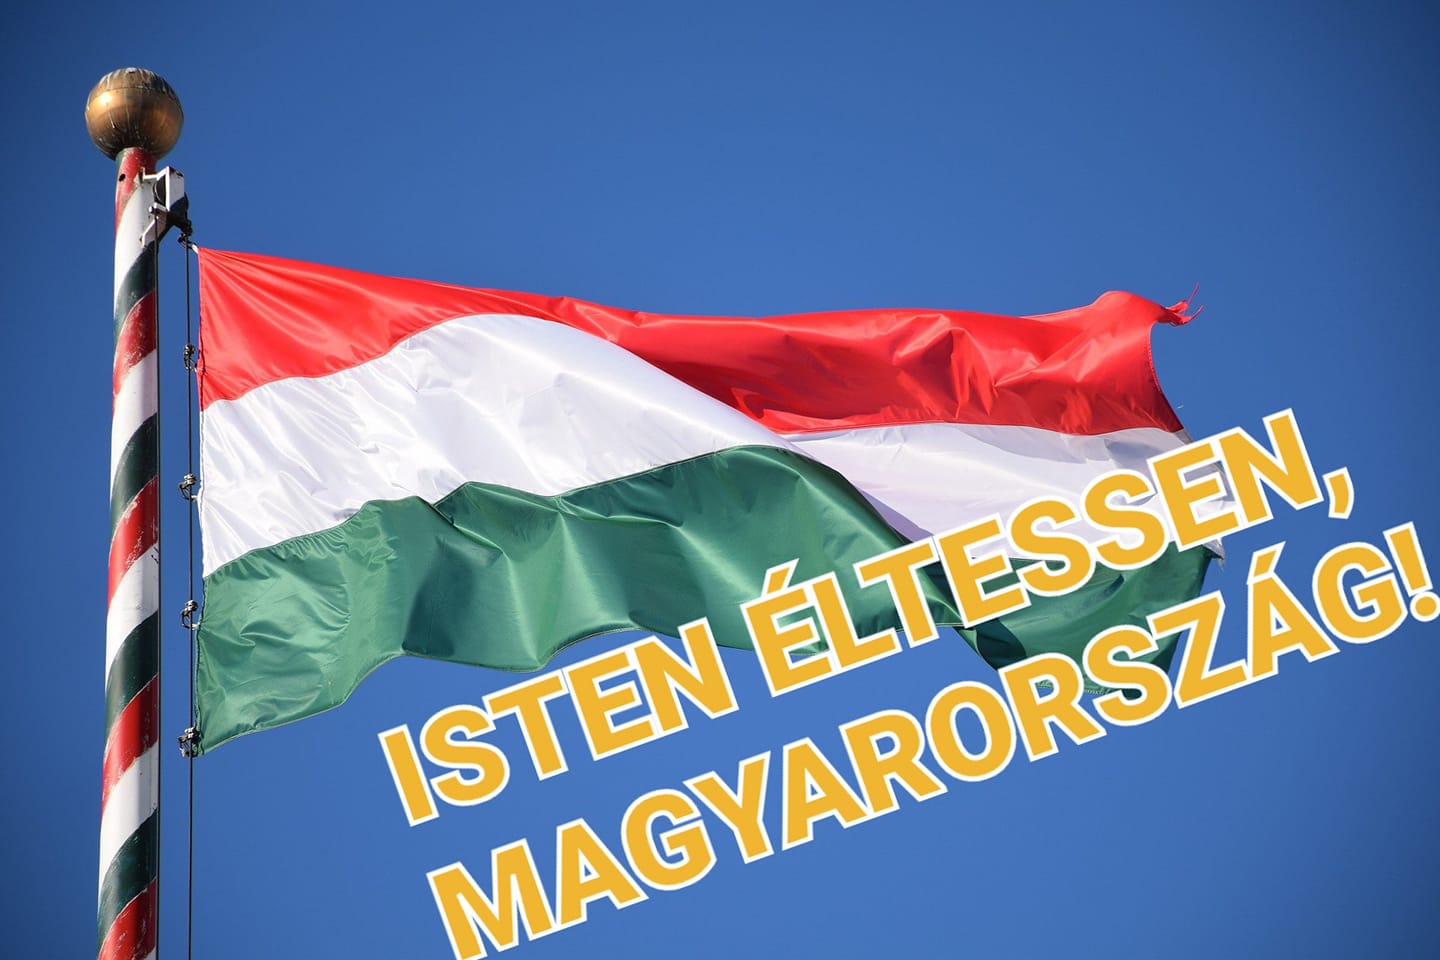 Isten étessen, Magyarország!